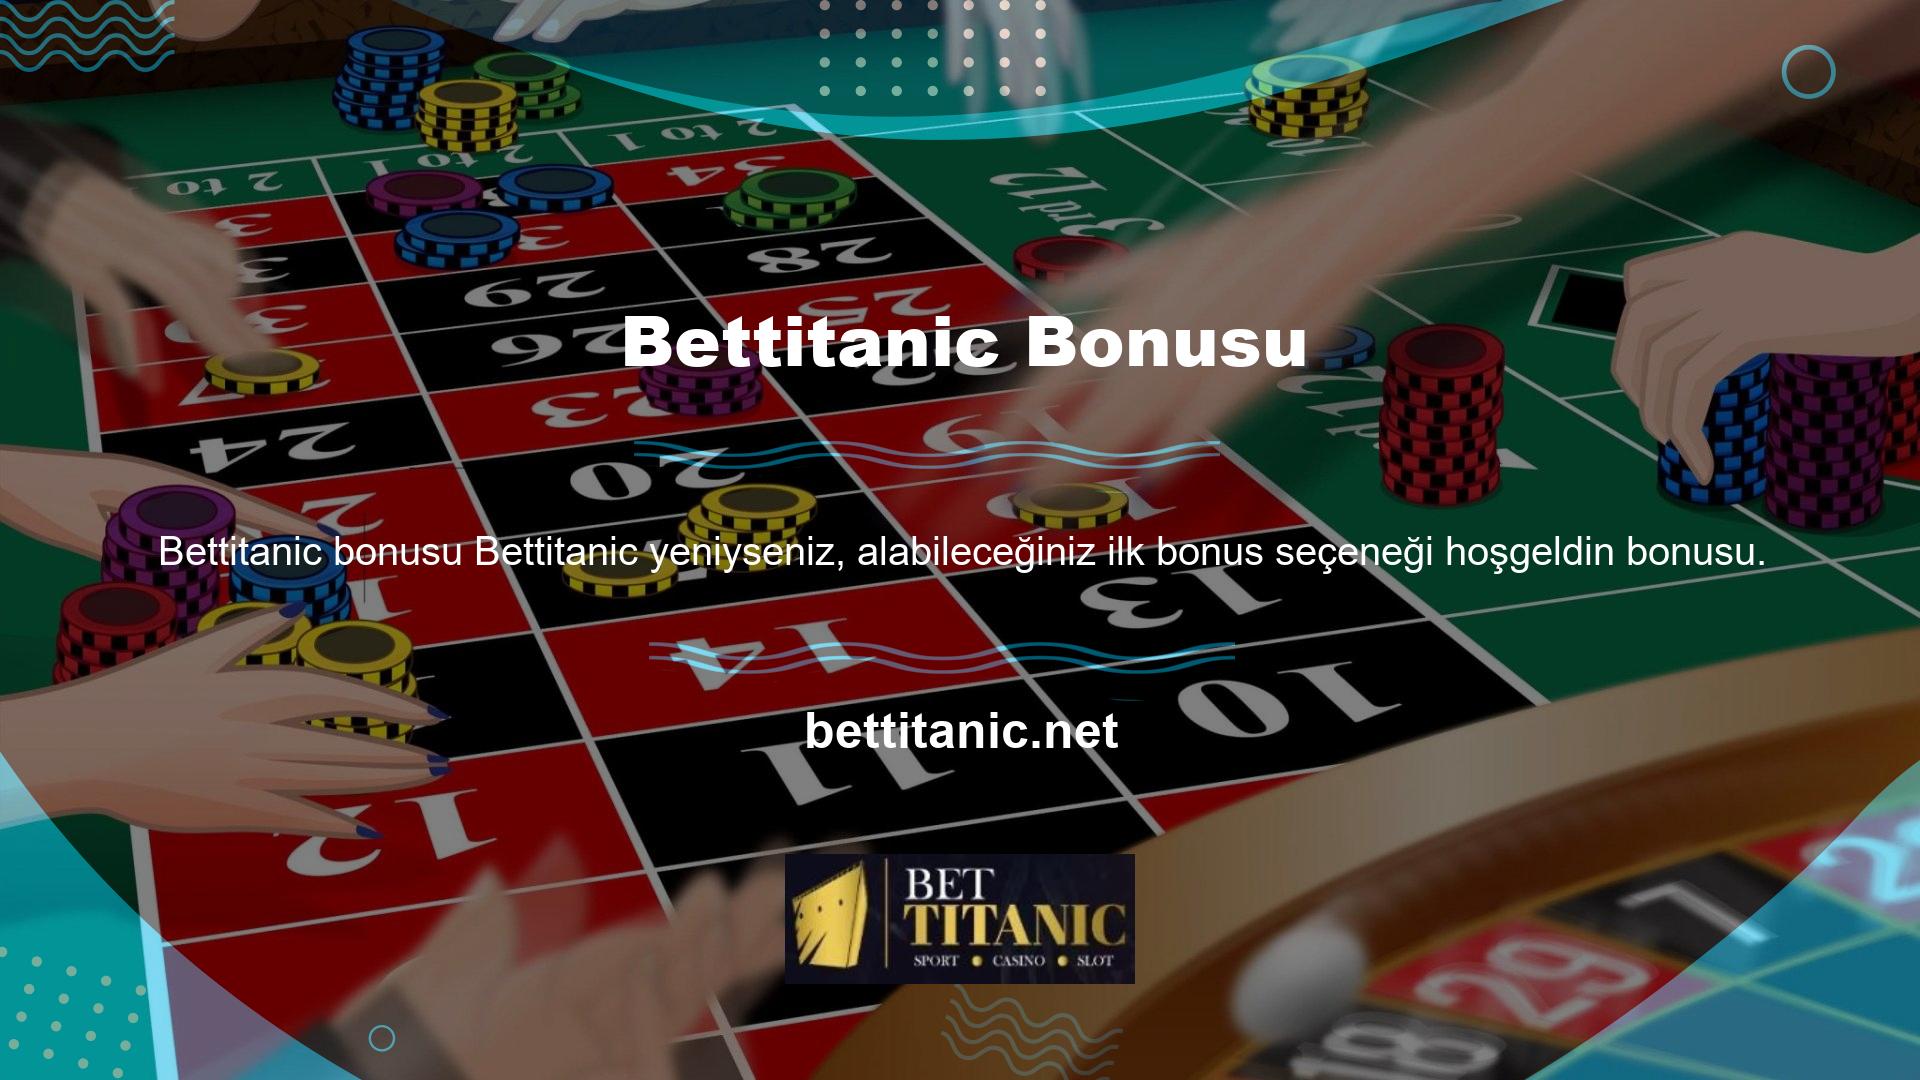 Bettitanic, siteye yeni gelenler, hesap açan yeni üyeler ve yeni para yatıranlar için tam bonus desteği sunuyor